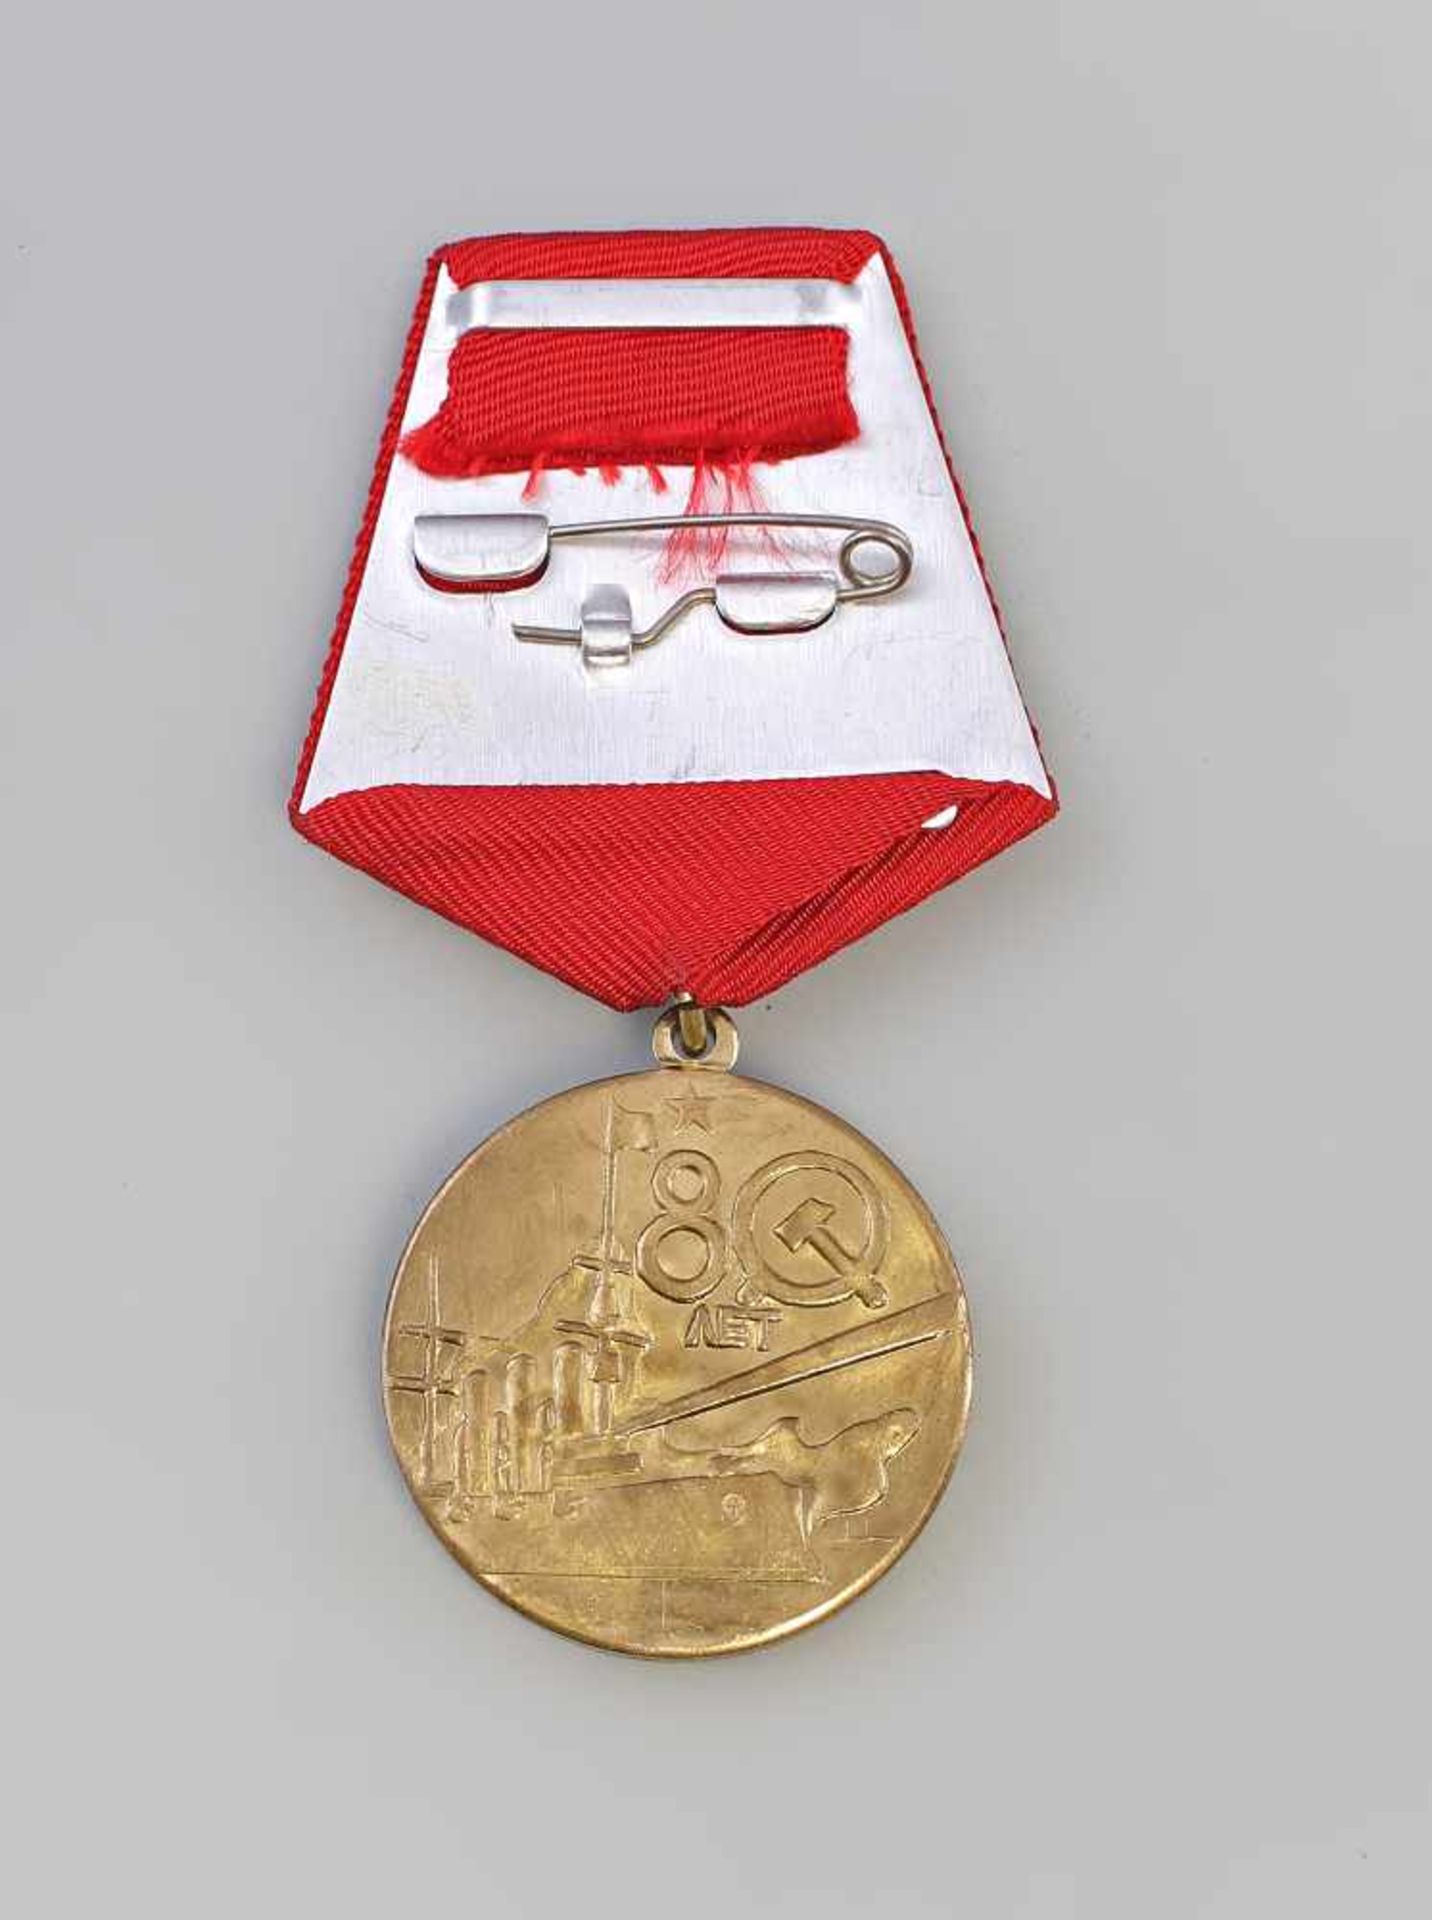 Medaille 80 Jahre Große Sozialistische Oktober-Revolution 1917-97 Russland 1997, Messing, tlw. rot - Bild 2 aus 2